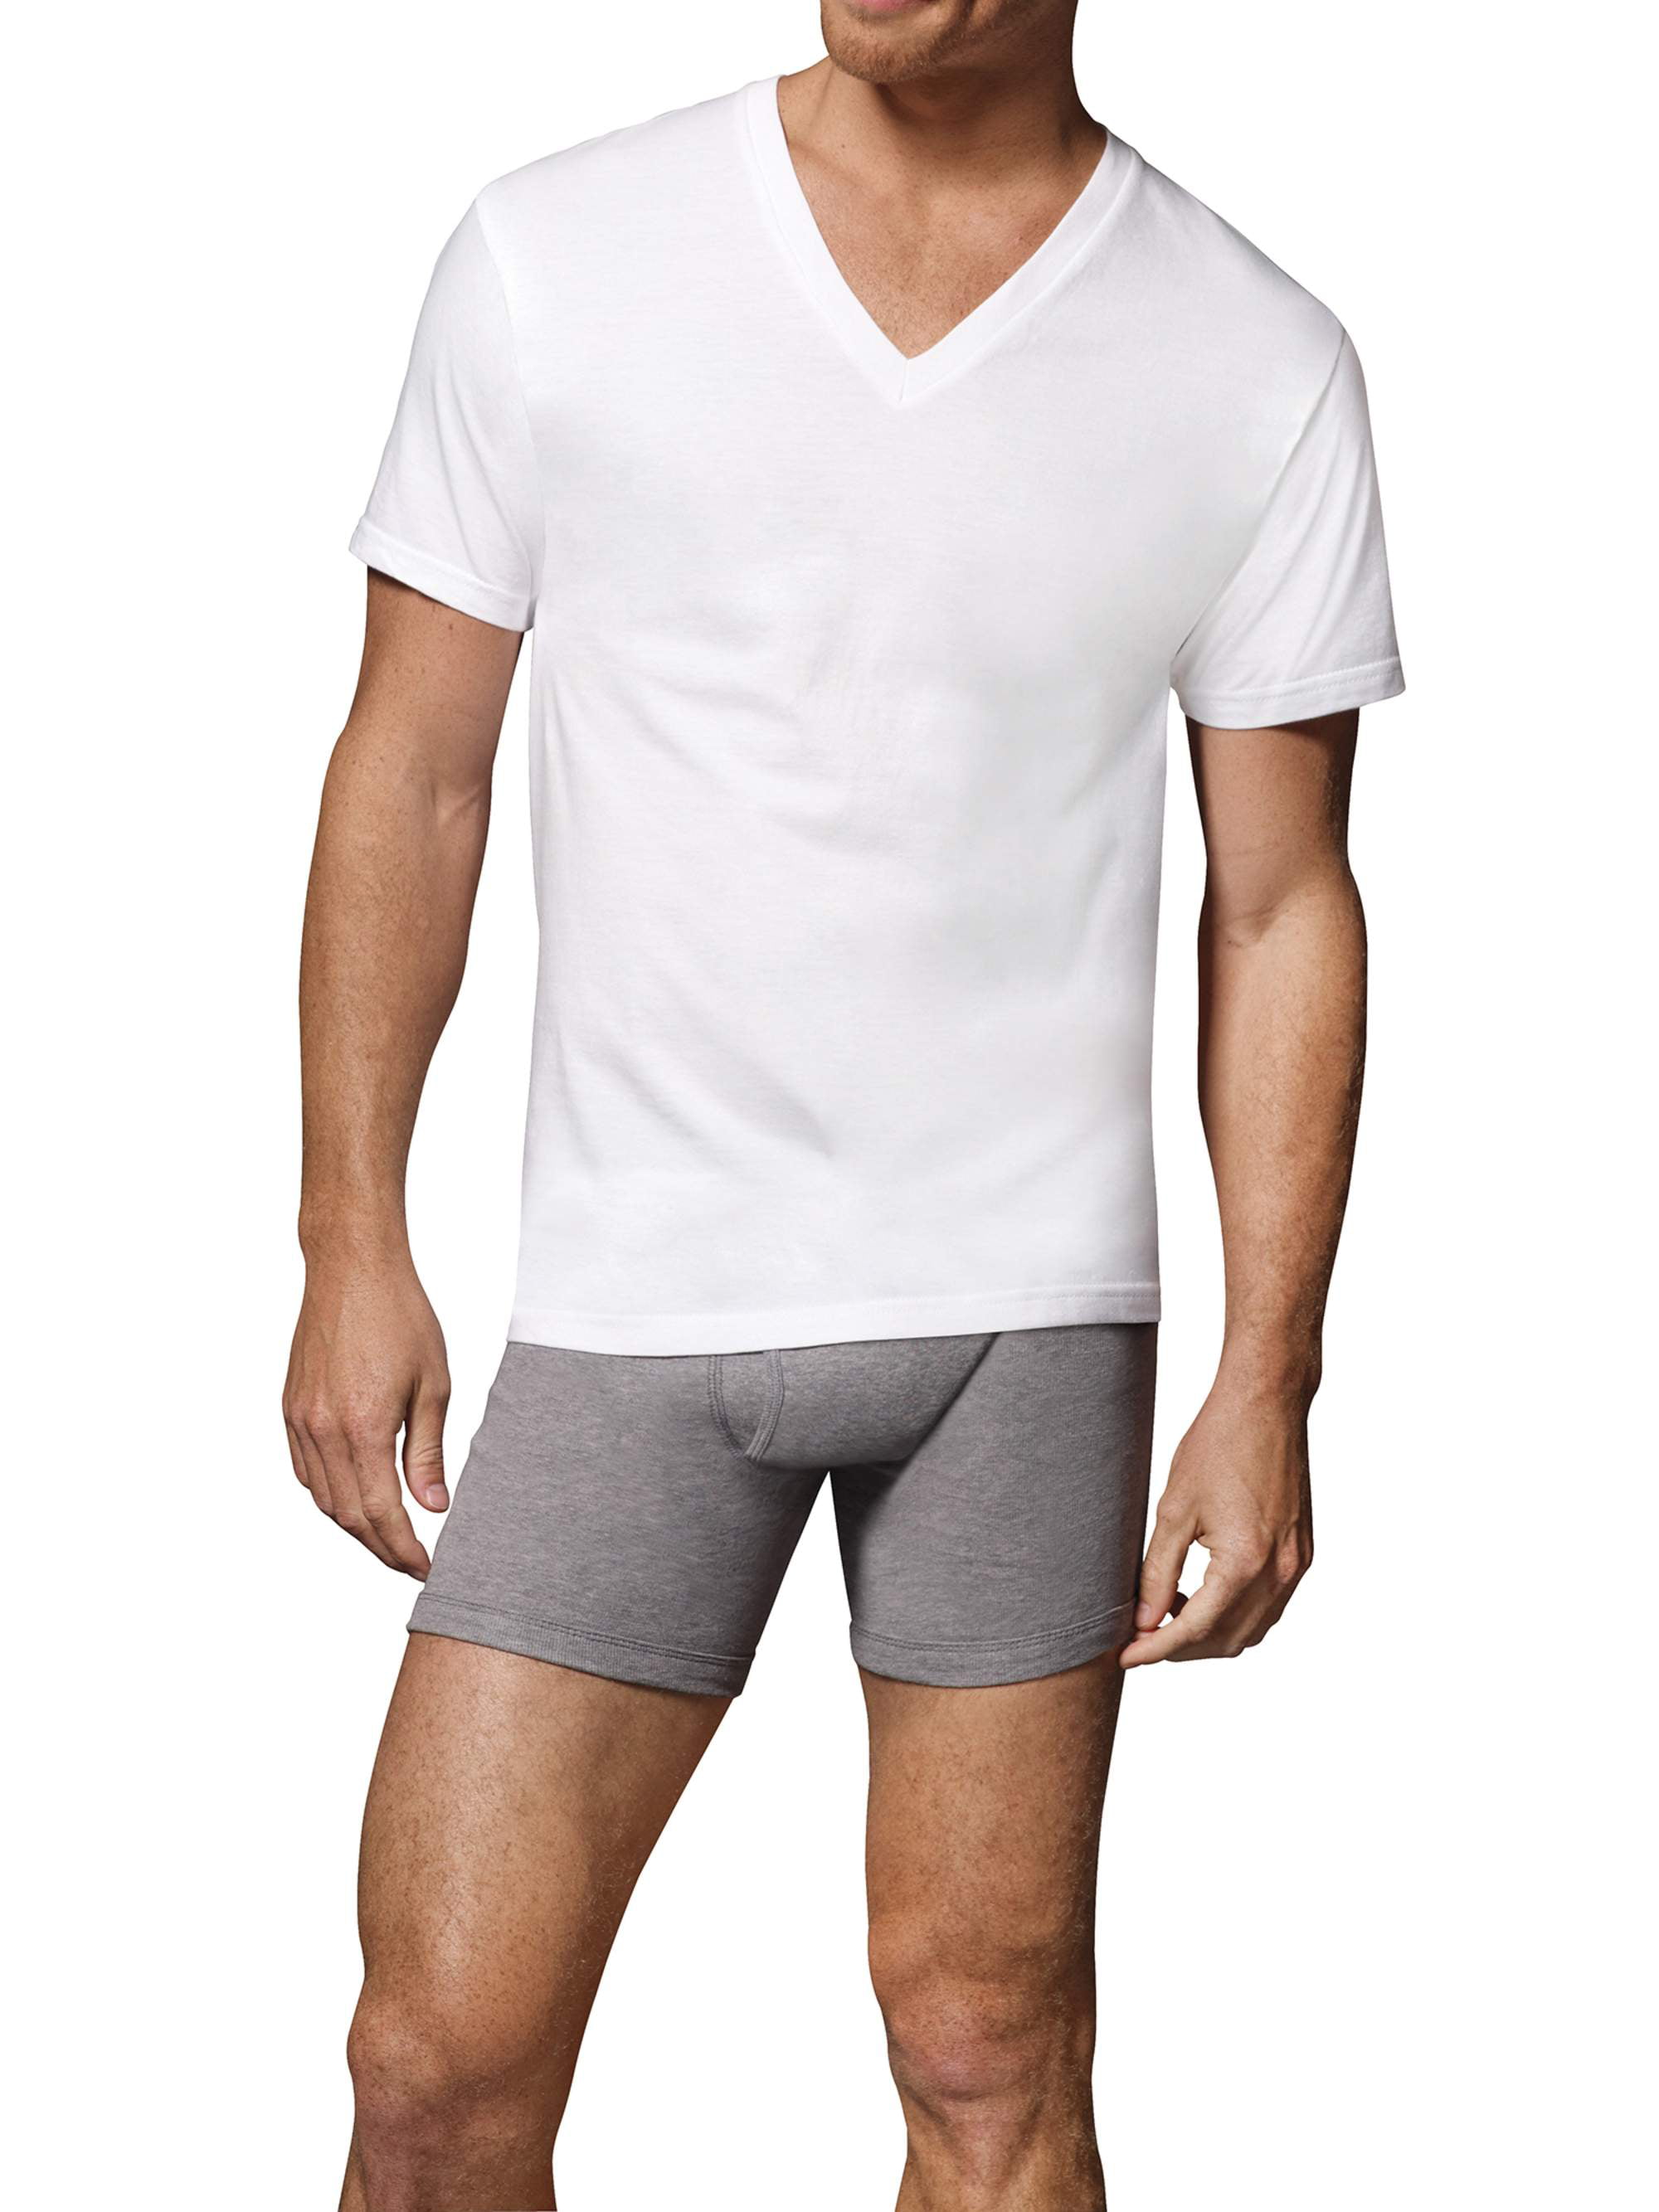 Hanes Men's Value Pack White V-Neck Undershirts, 6 Pack